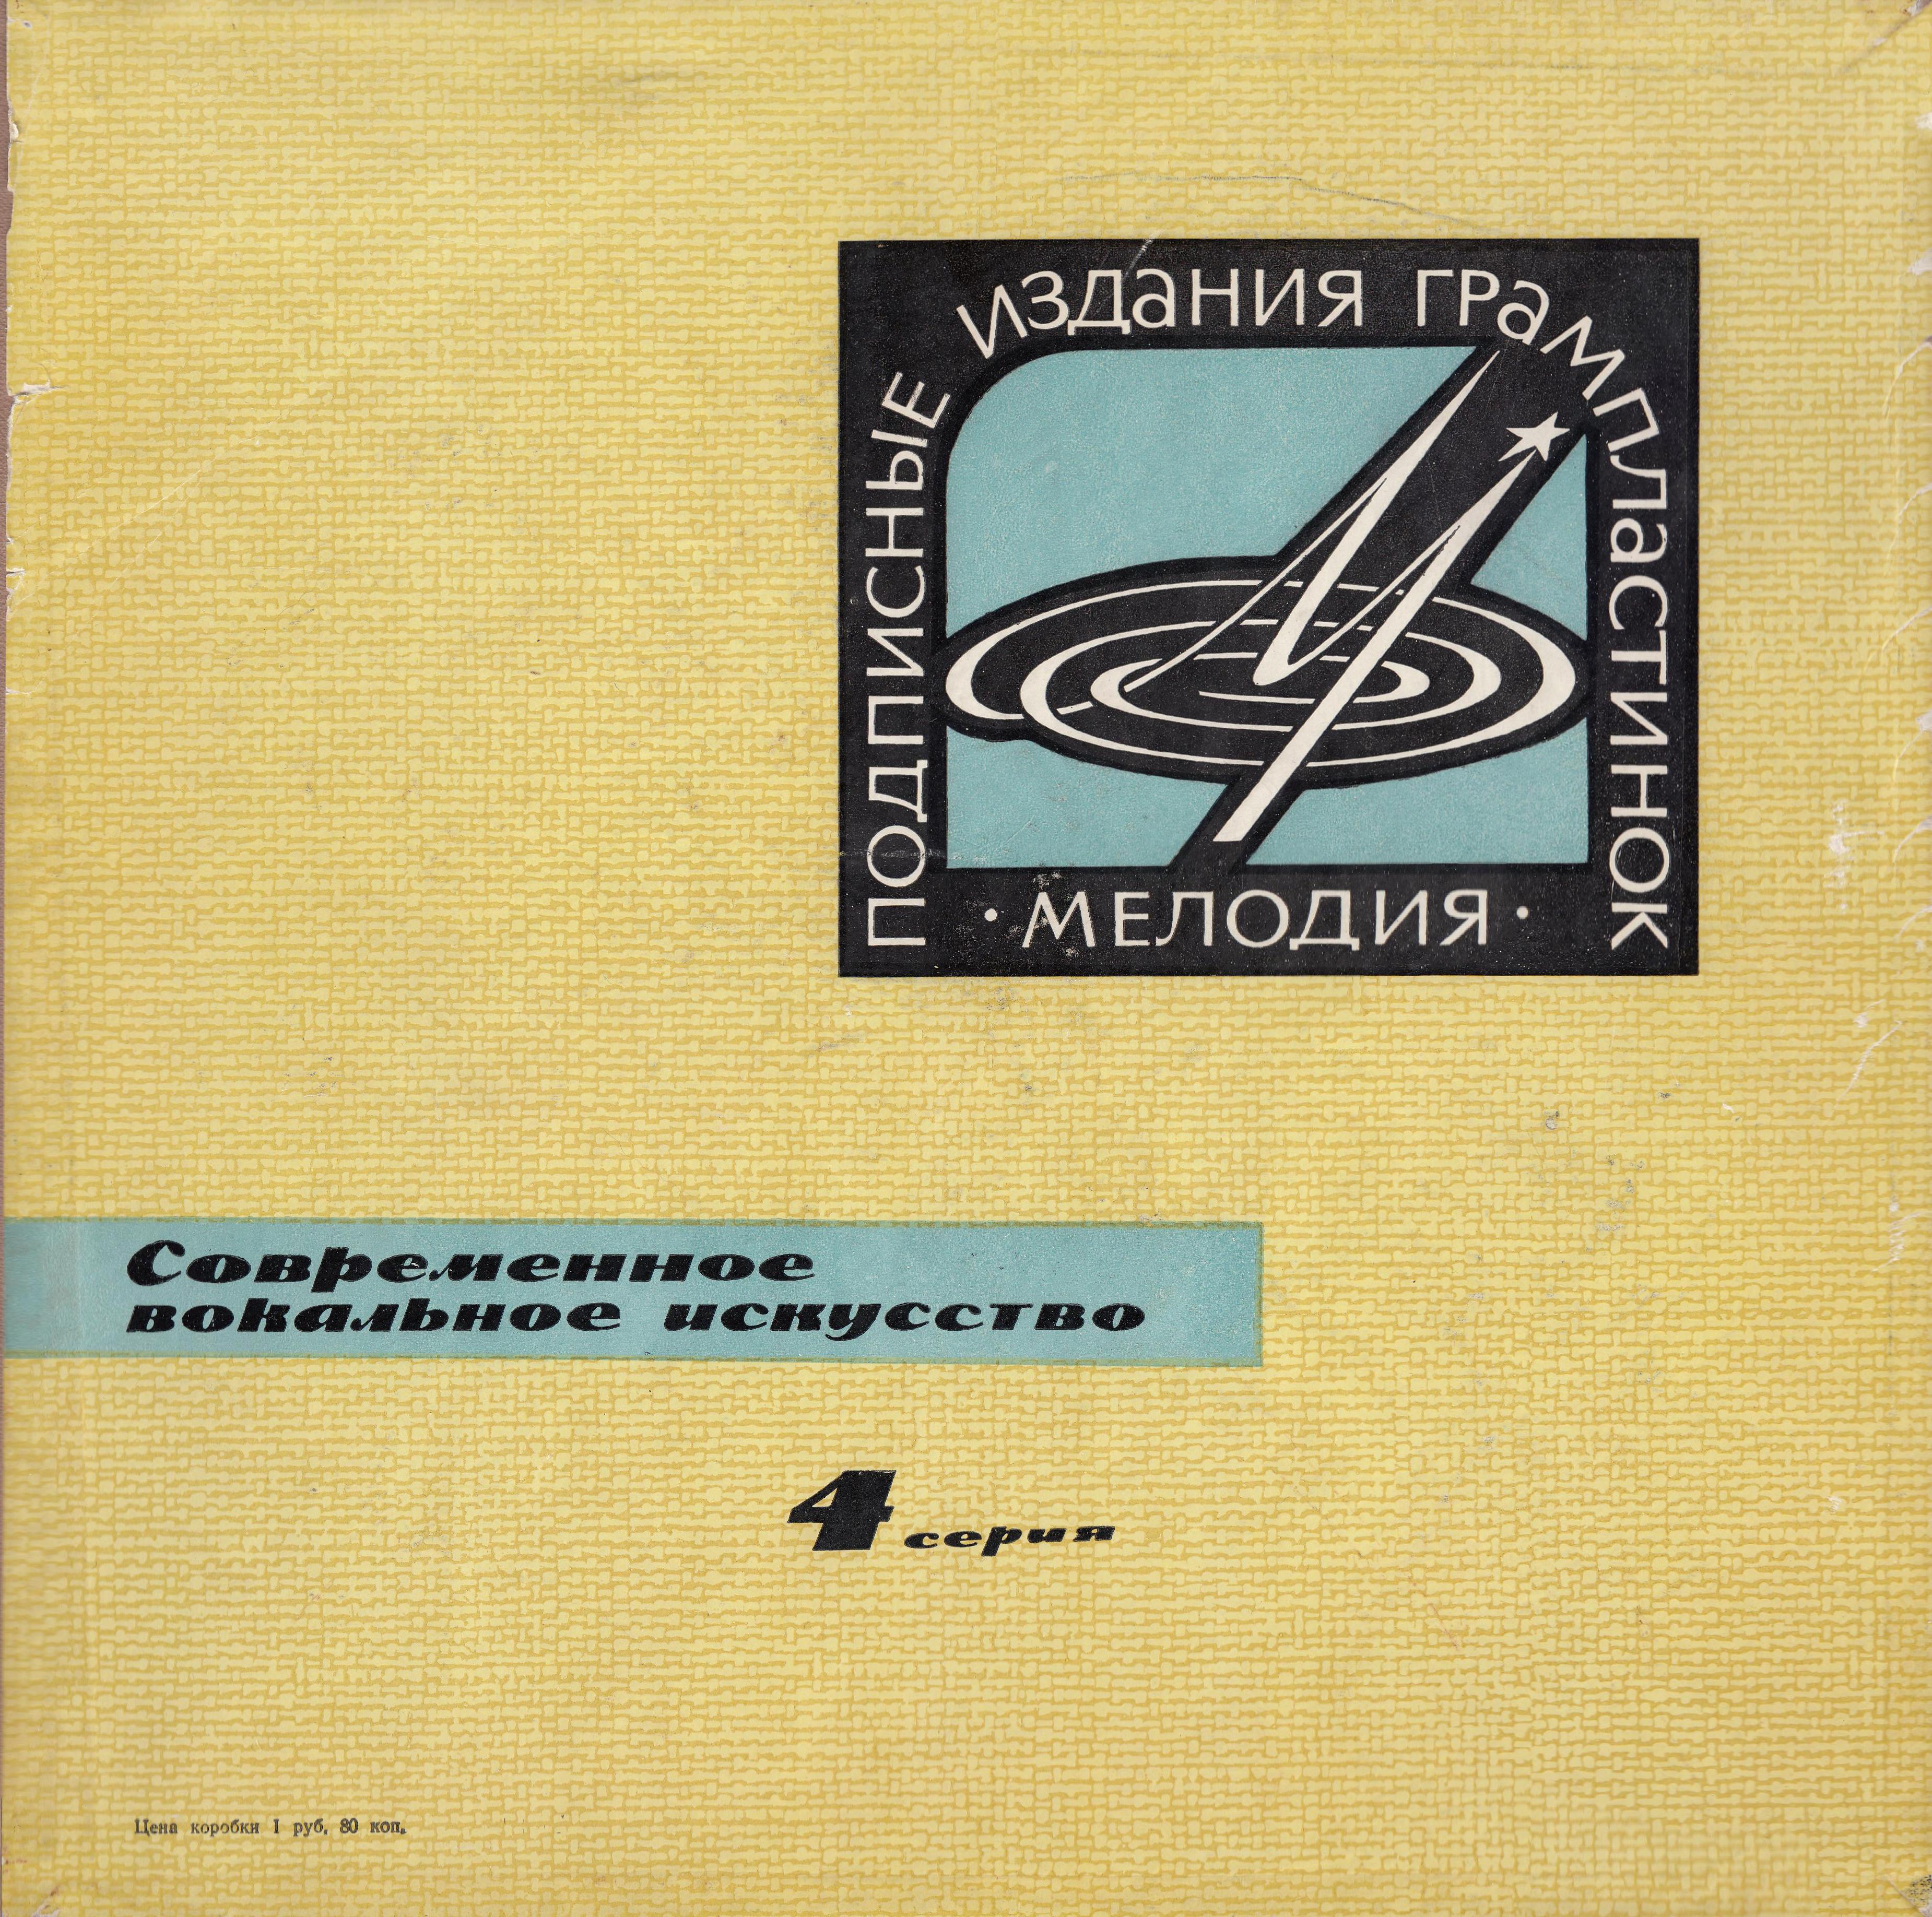 Современное вокальное искусство. 4 серия (4 пластинки, 1965 г.)